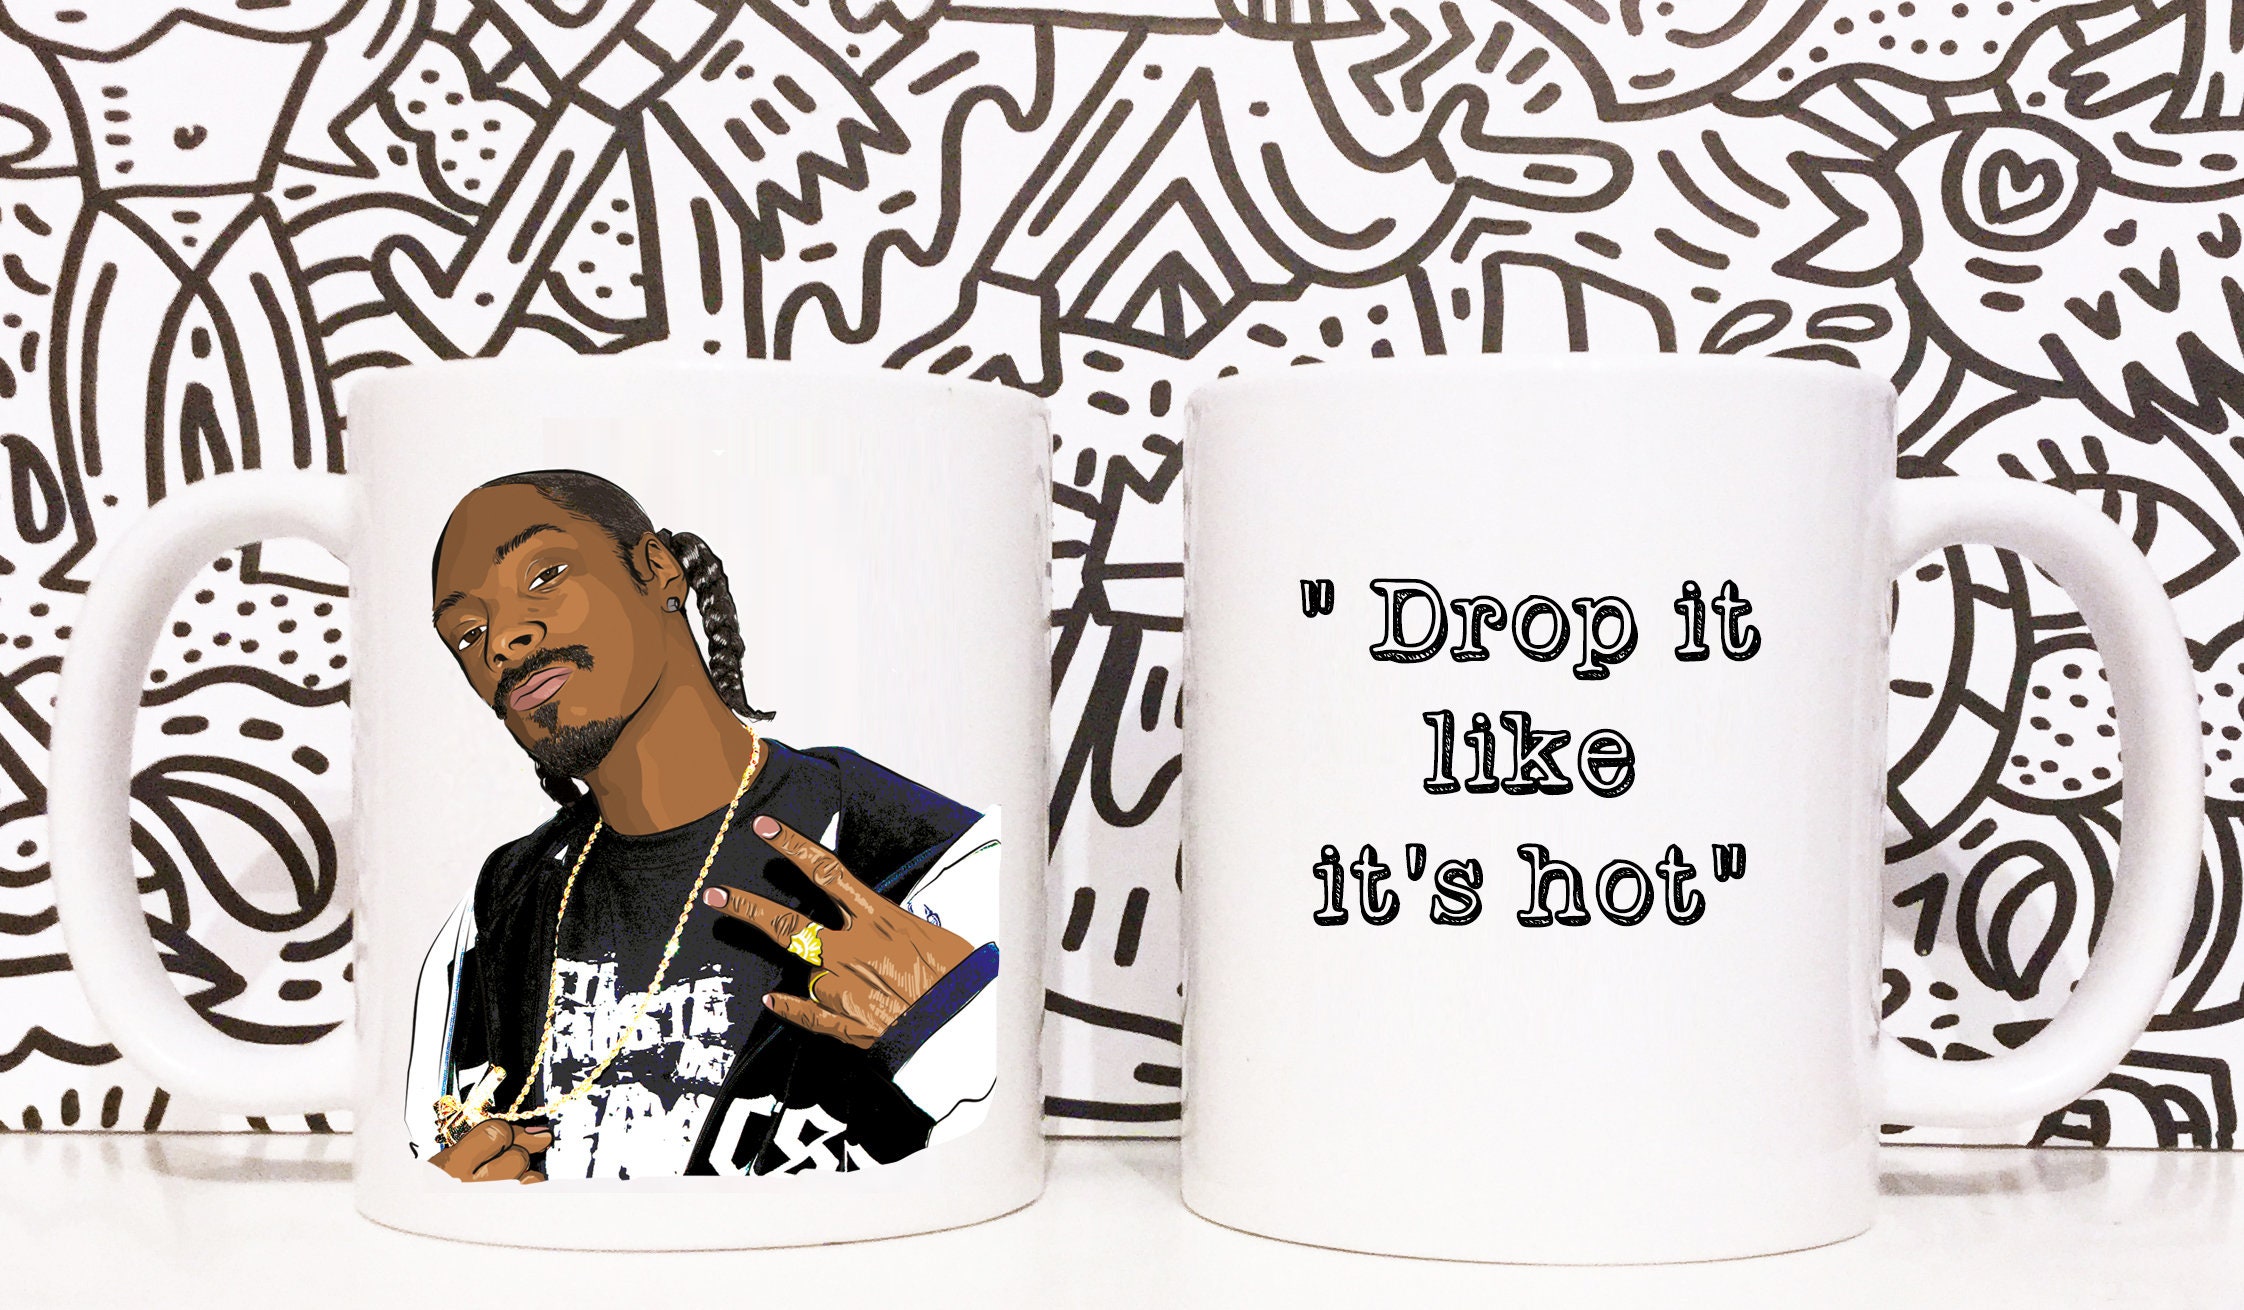 Snoop dogg drop it like. Snoop Dogg Drop it like it's hot.